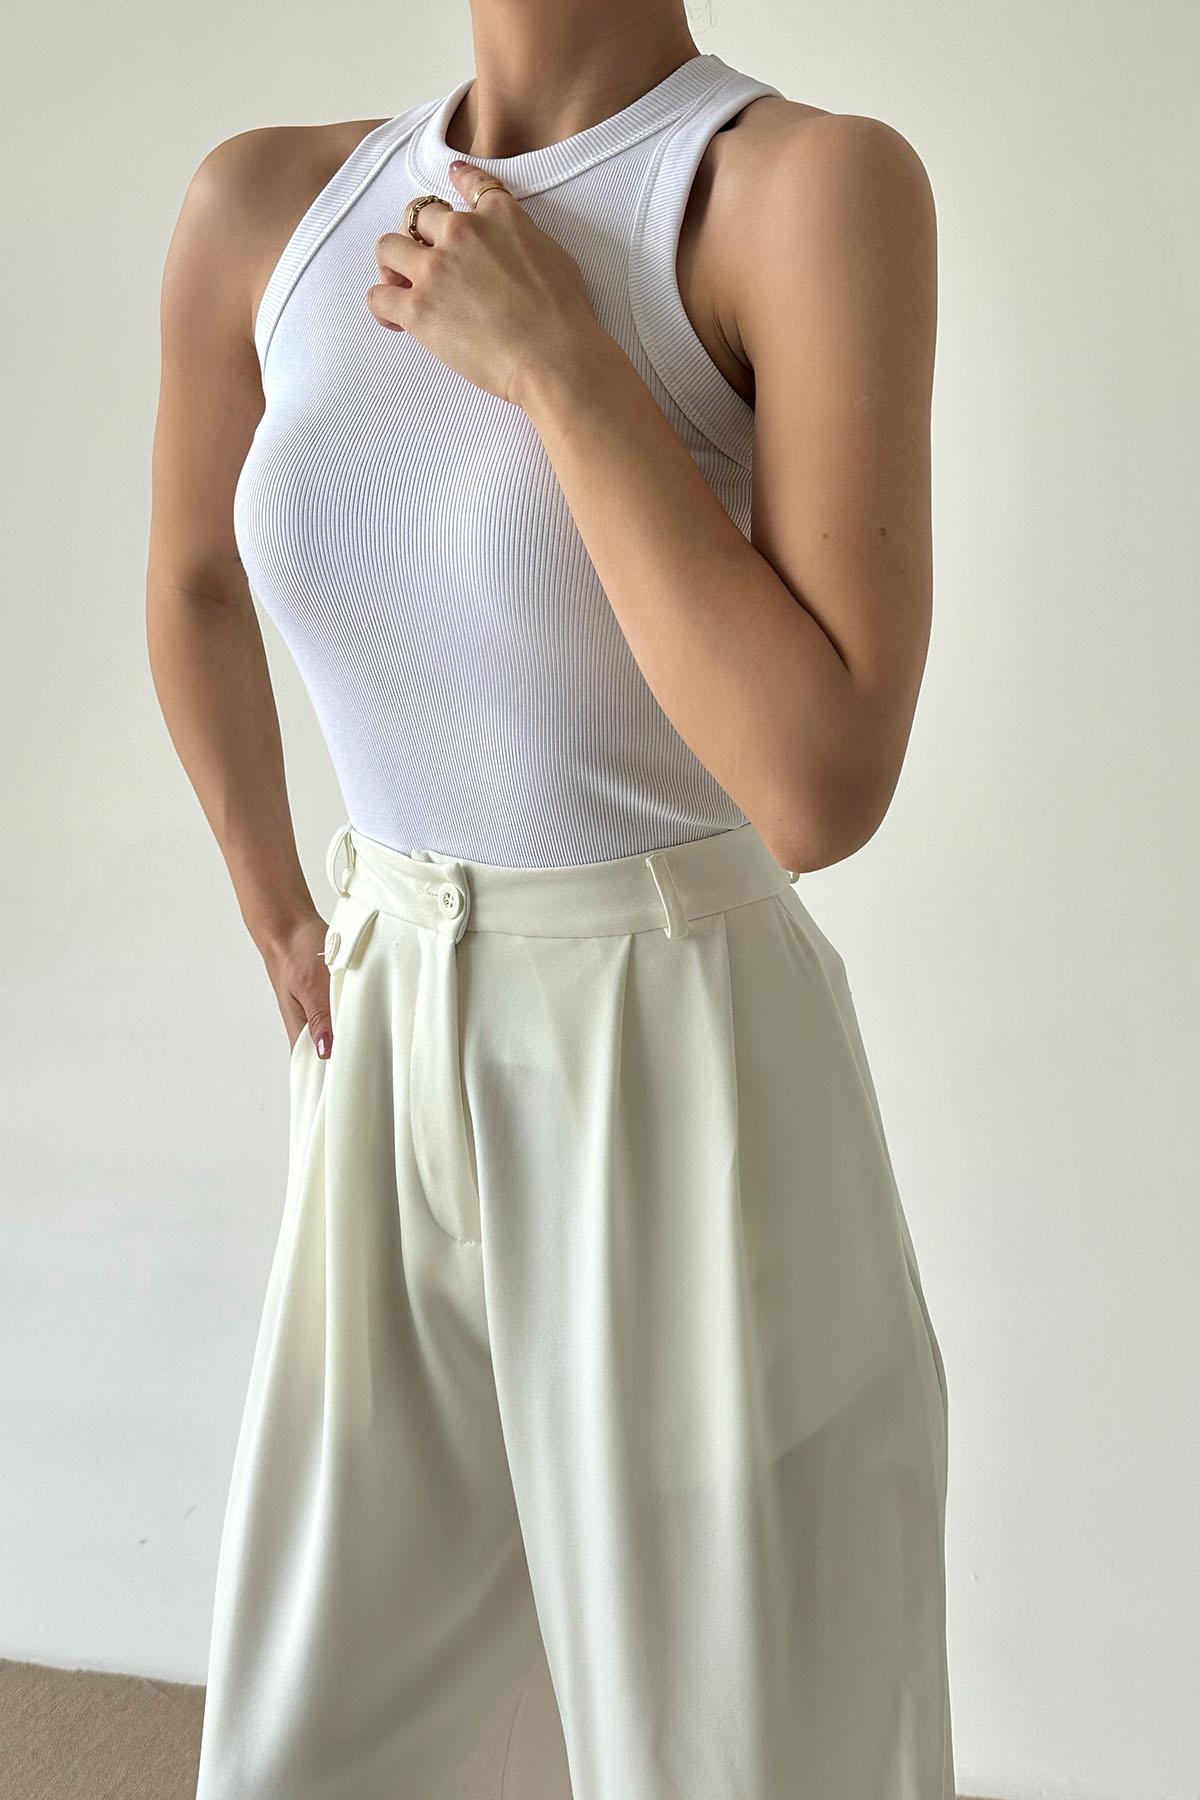 A wholesale clothing model wears ATHLETE - White, Turkish wholesale Undershirt of Qustyle